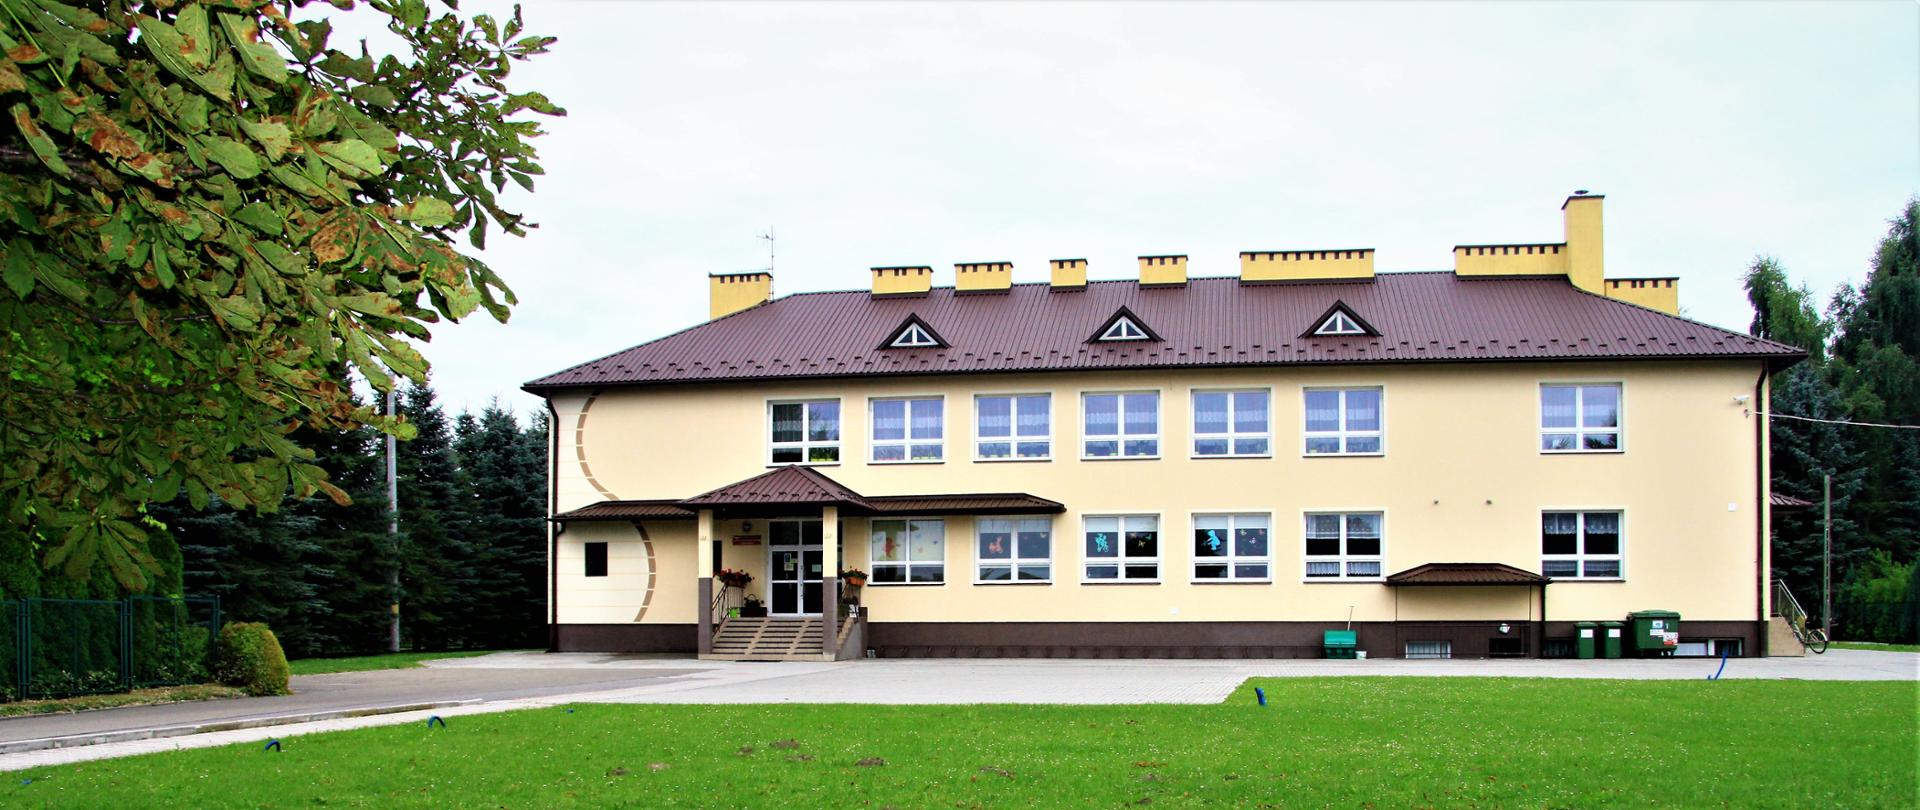 Widoczny front szkoły wraz z wejściem głównym widoczny trawnik i parking przed szkołą elewacja w jasnym kolorze okna białe dach brązowy w sąsiedztwie szkoły widoczne zadrzewienia po prawej i po lewej